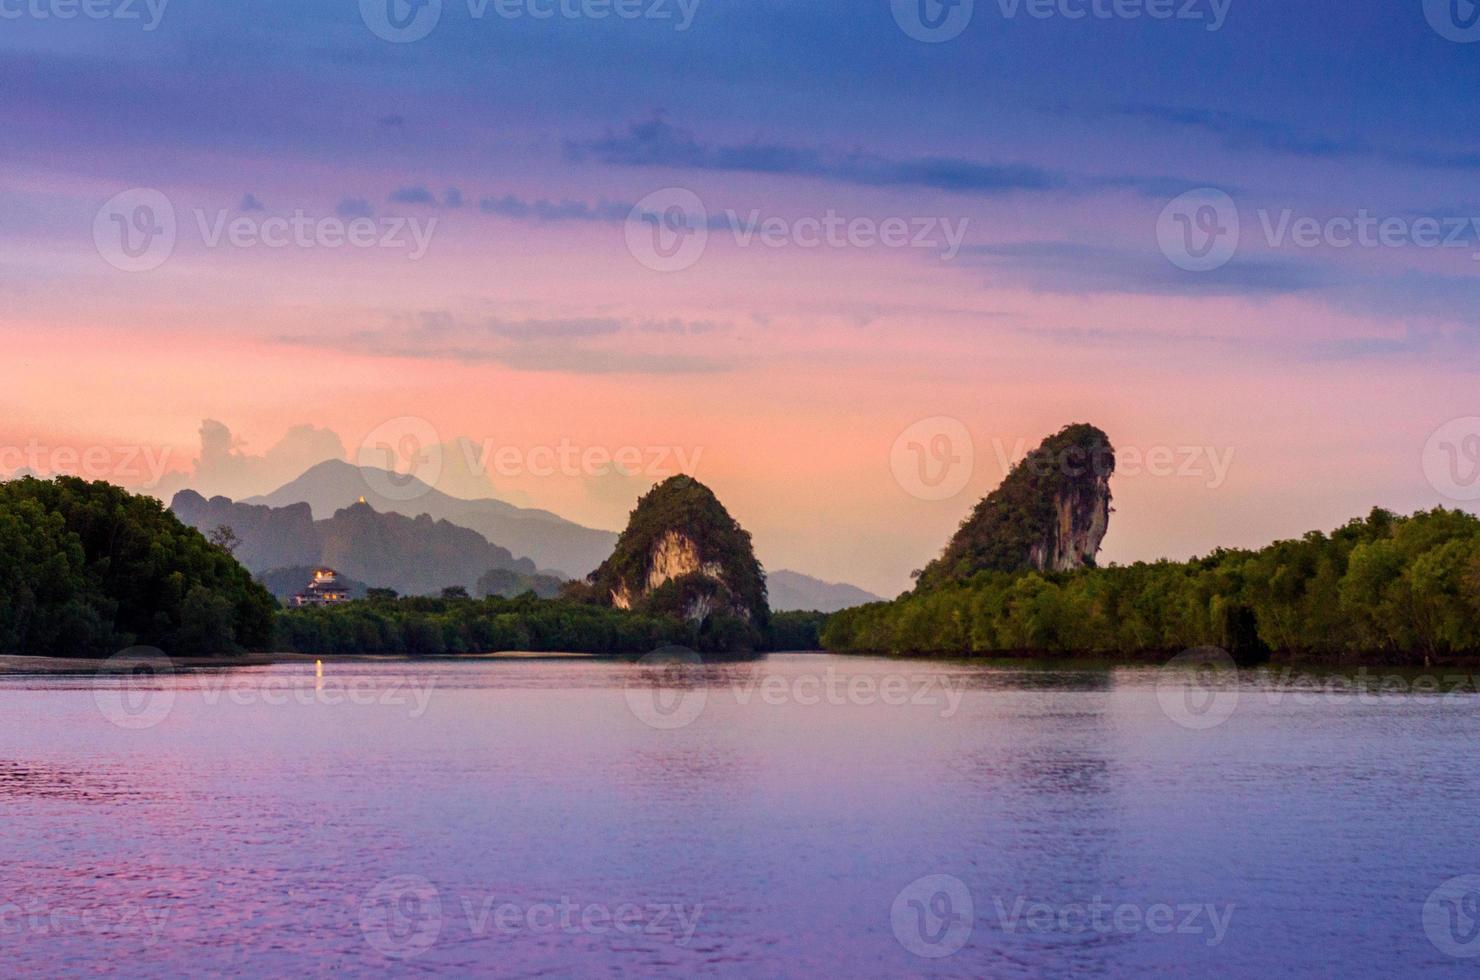 khao kha nab nam a krabi thailandia. la famosa attrazione turistica nel sud della thailandia. le montagne gemelle hanno fiumi nel mezzo dell'atmosfera serale con luce dorata. foto